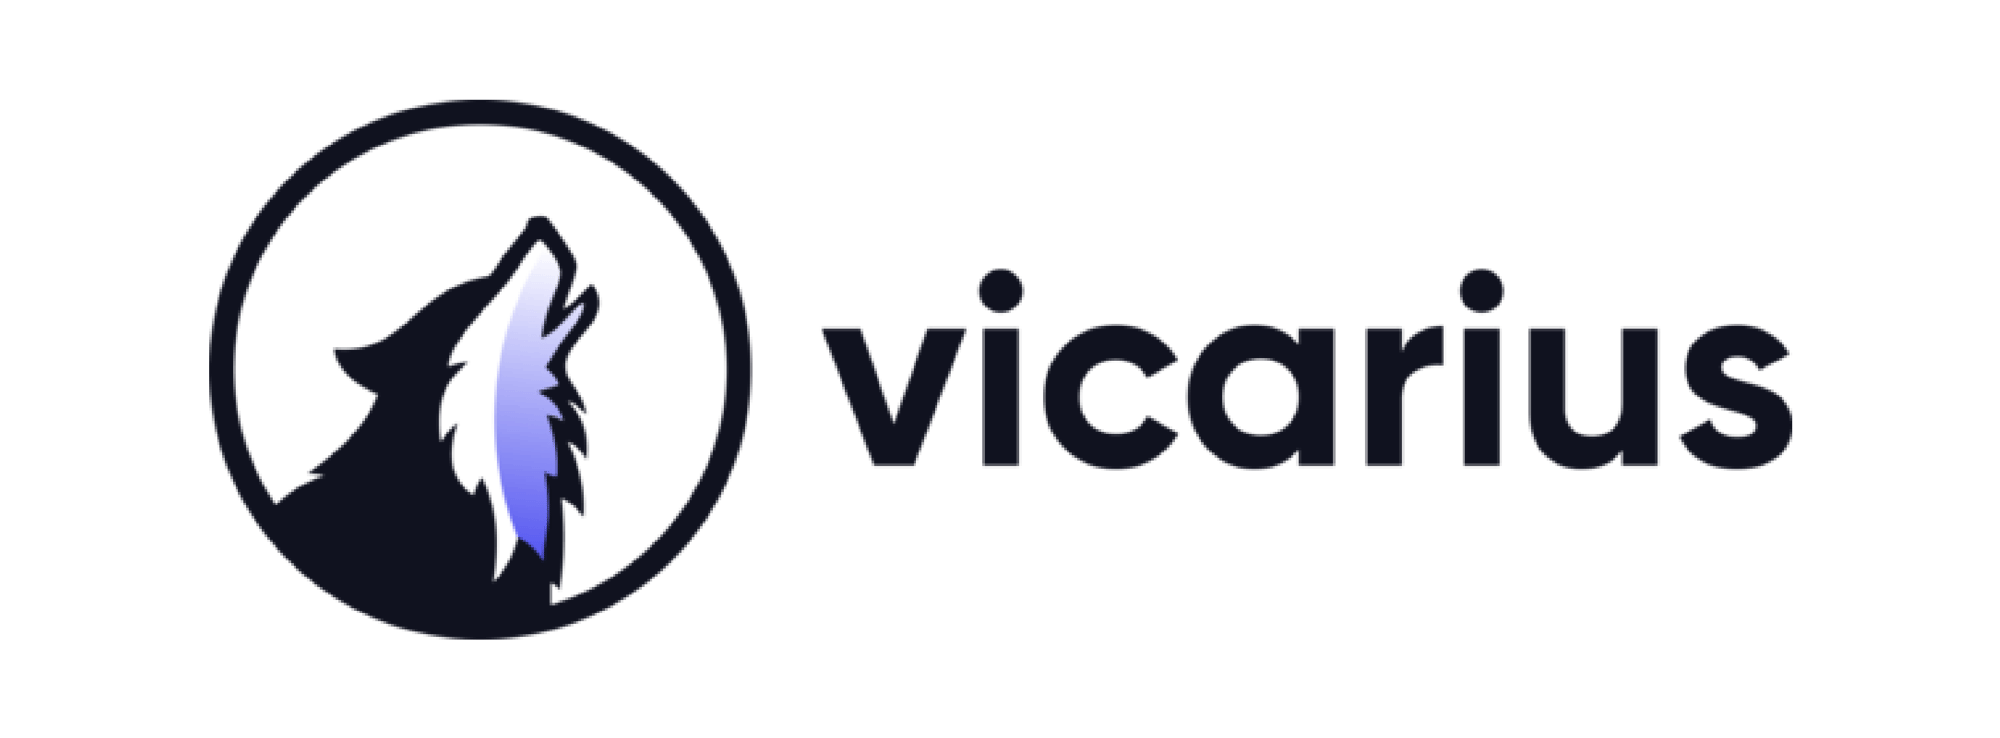 Summit-sponsor-vicarius